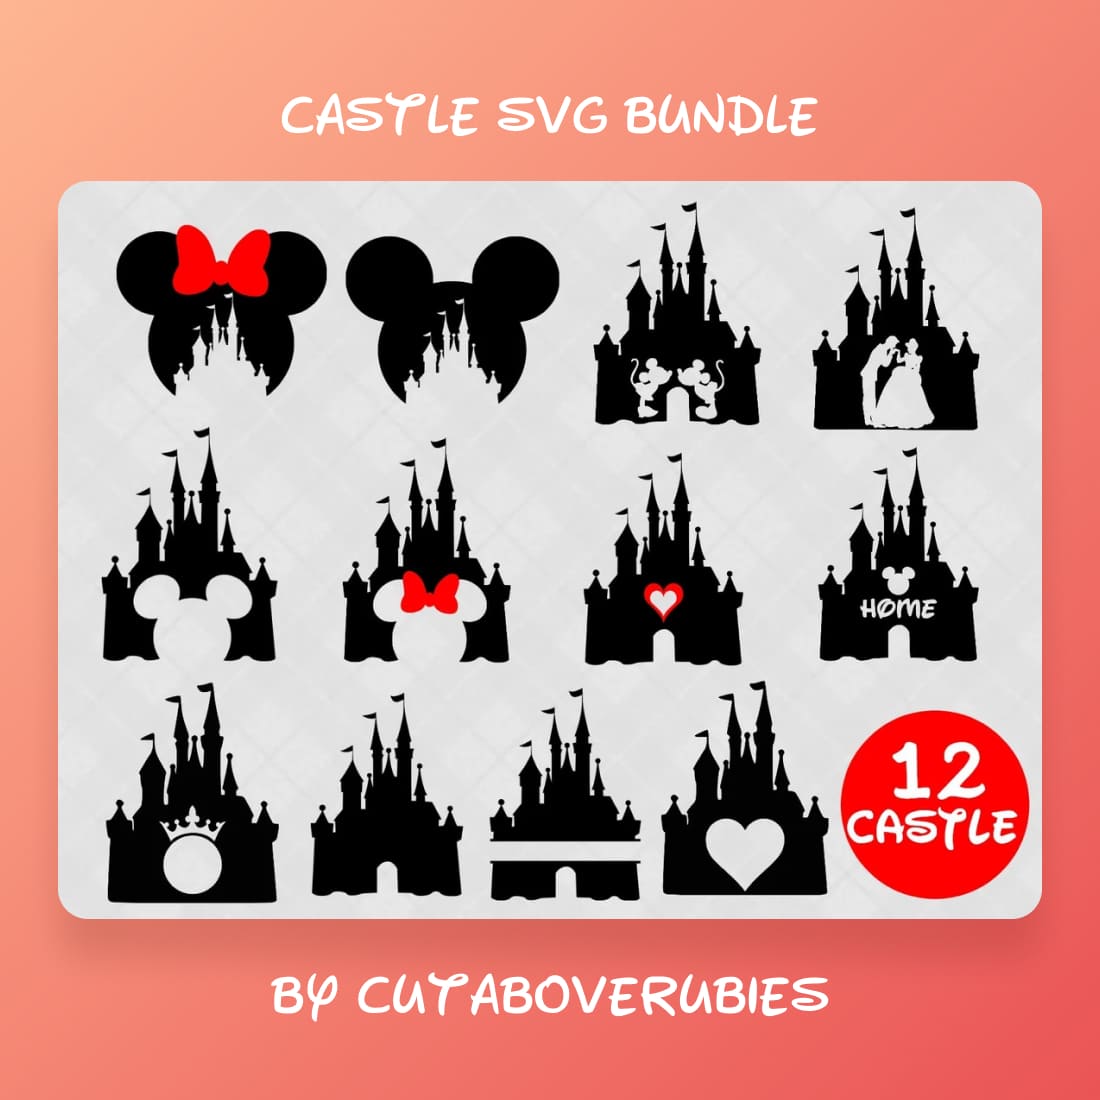 Castle SVG bundle main cover.